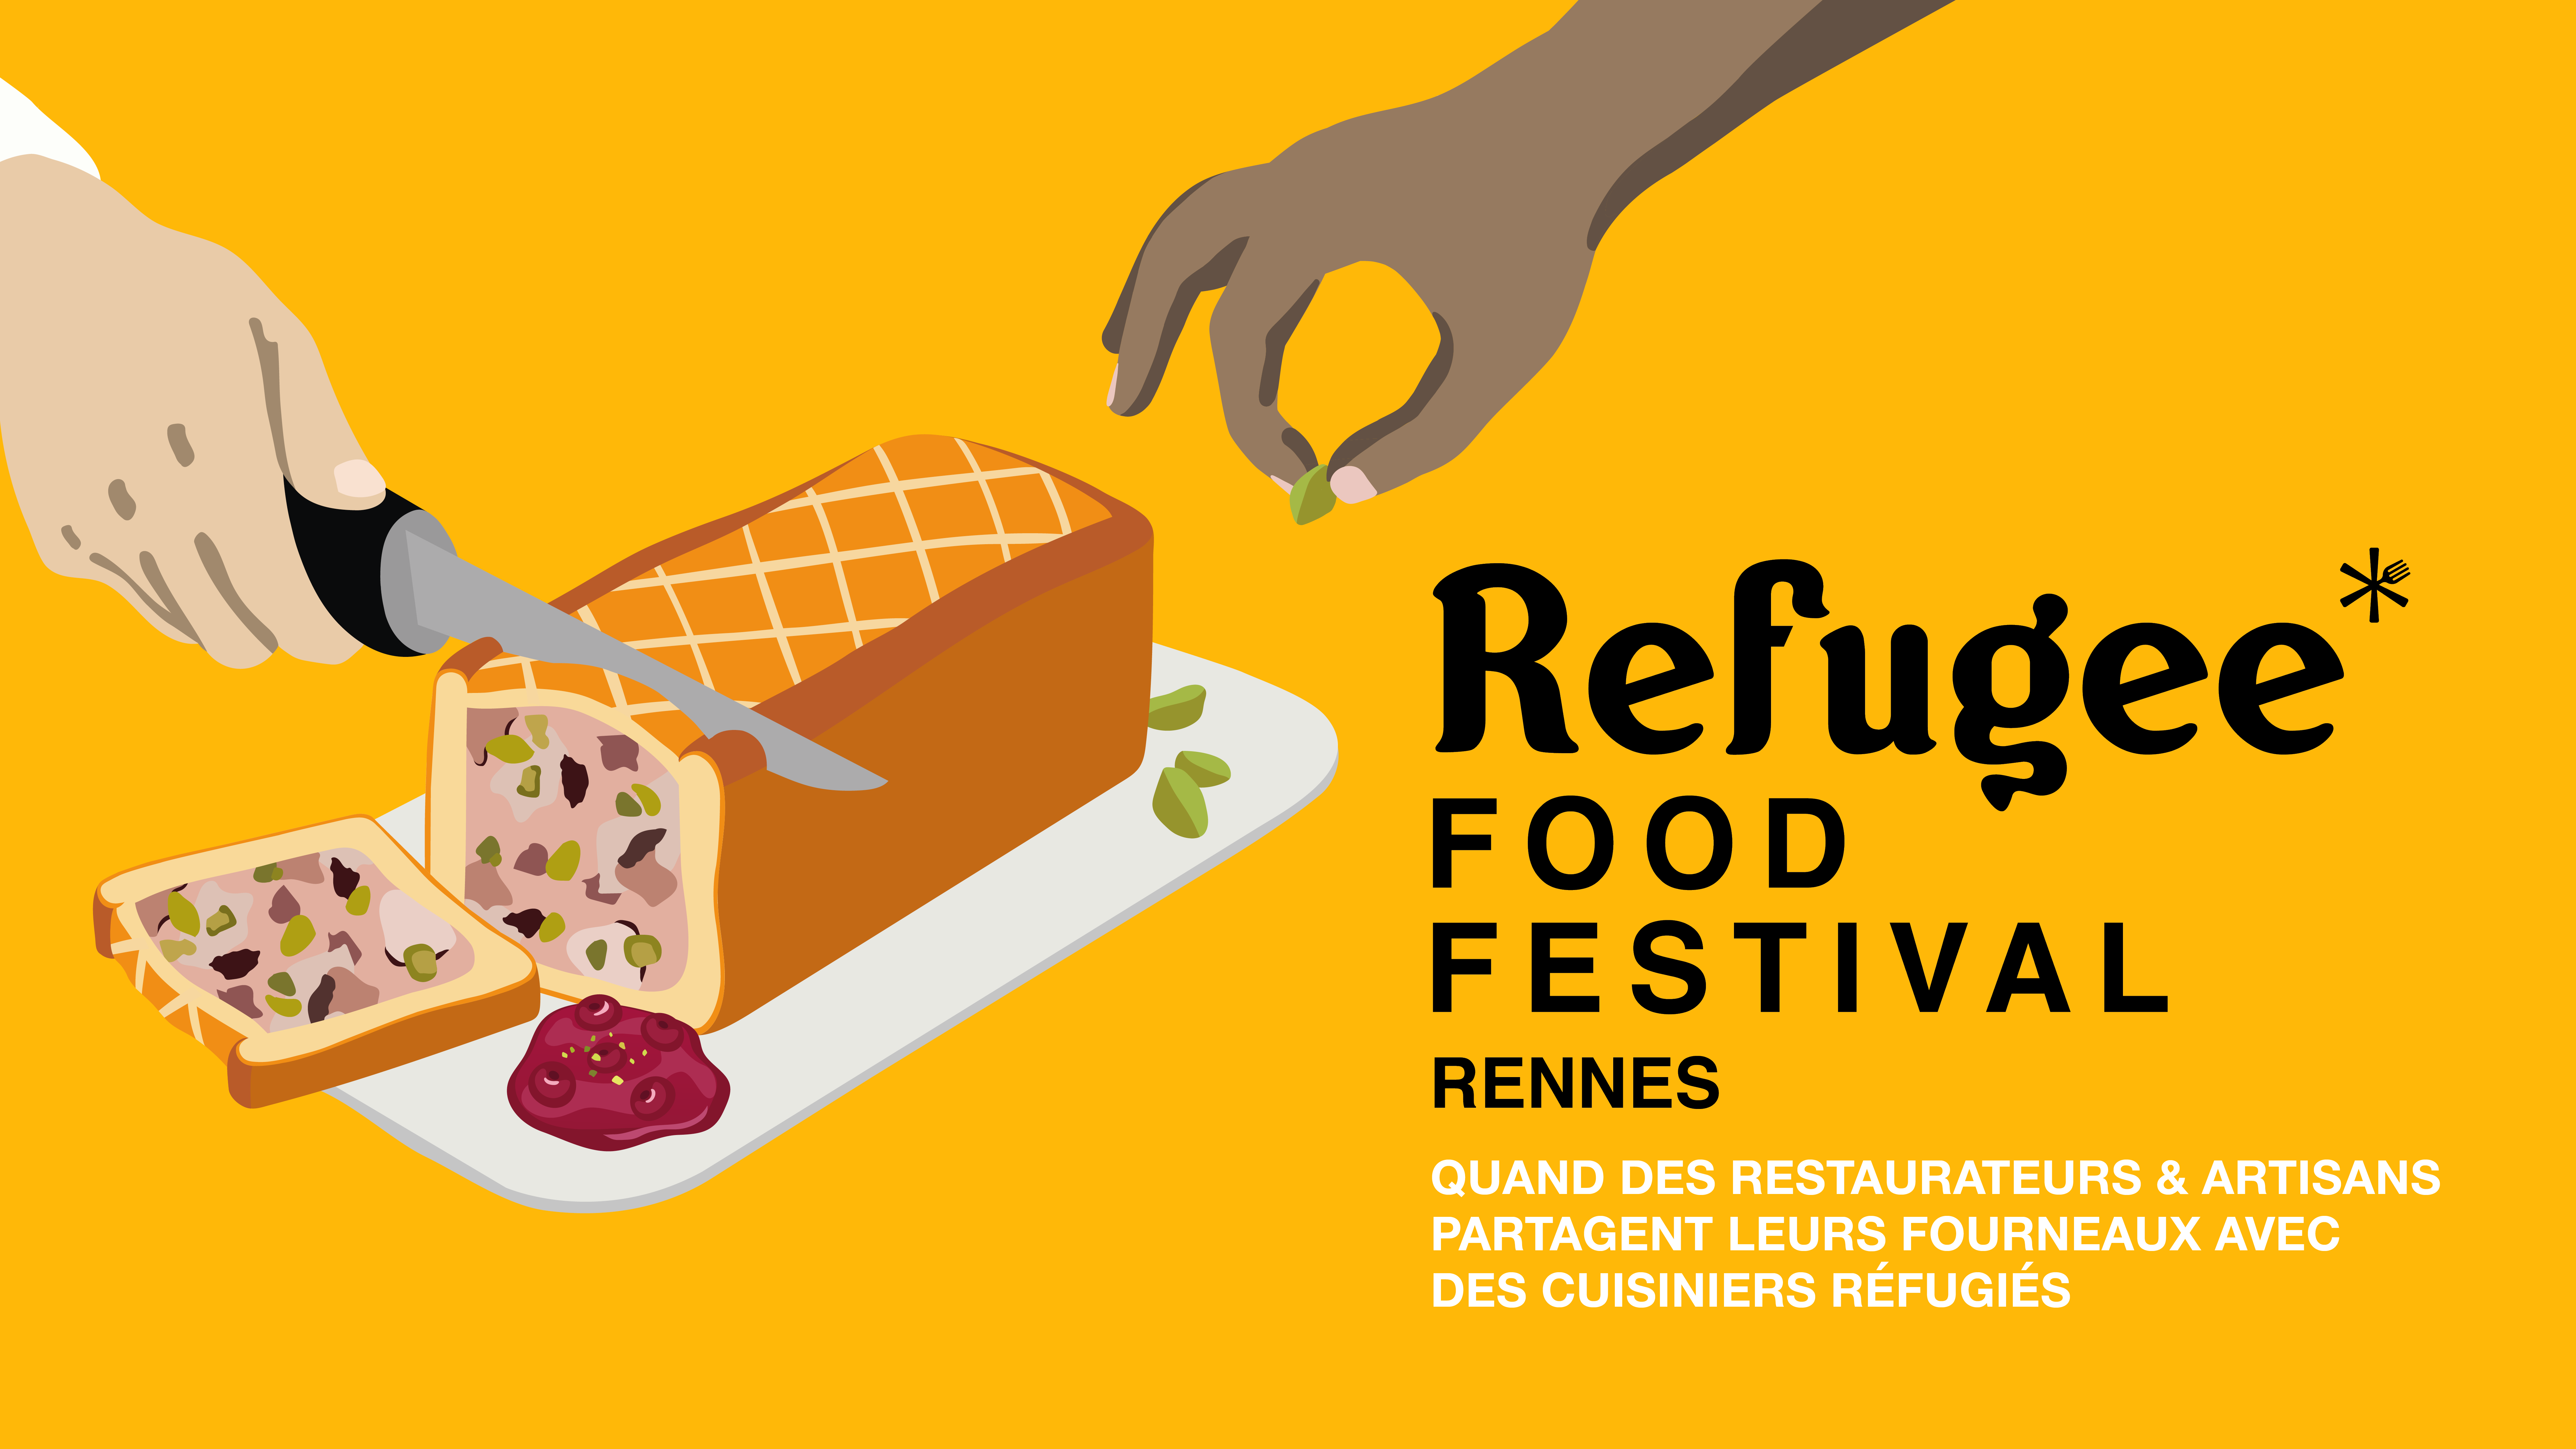 Lire la suite à propos de l’article Refugee Food Festival